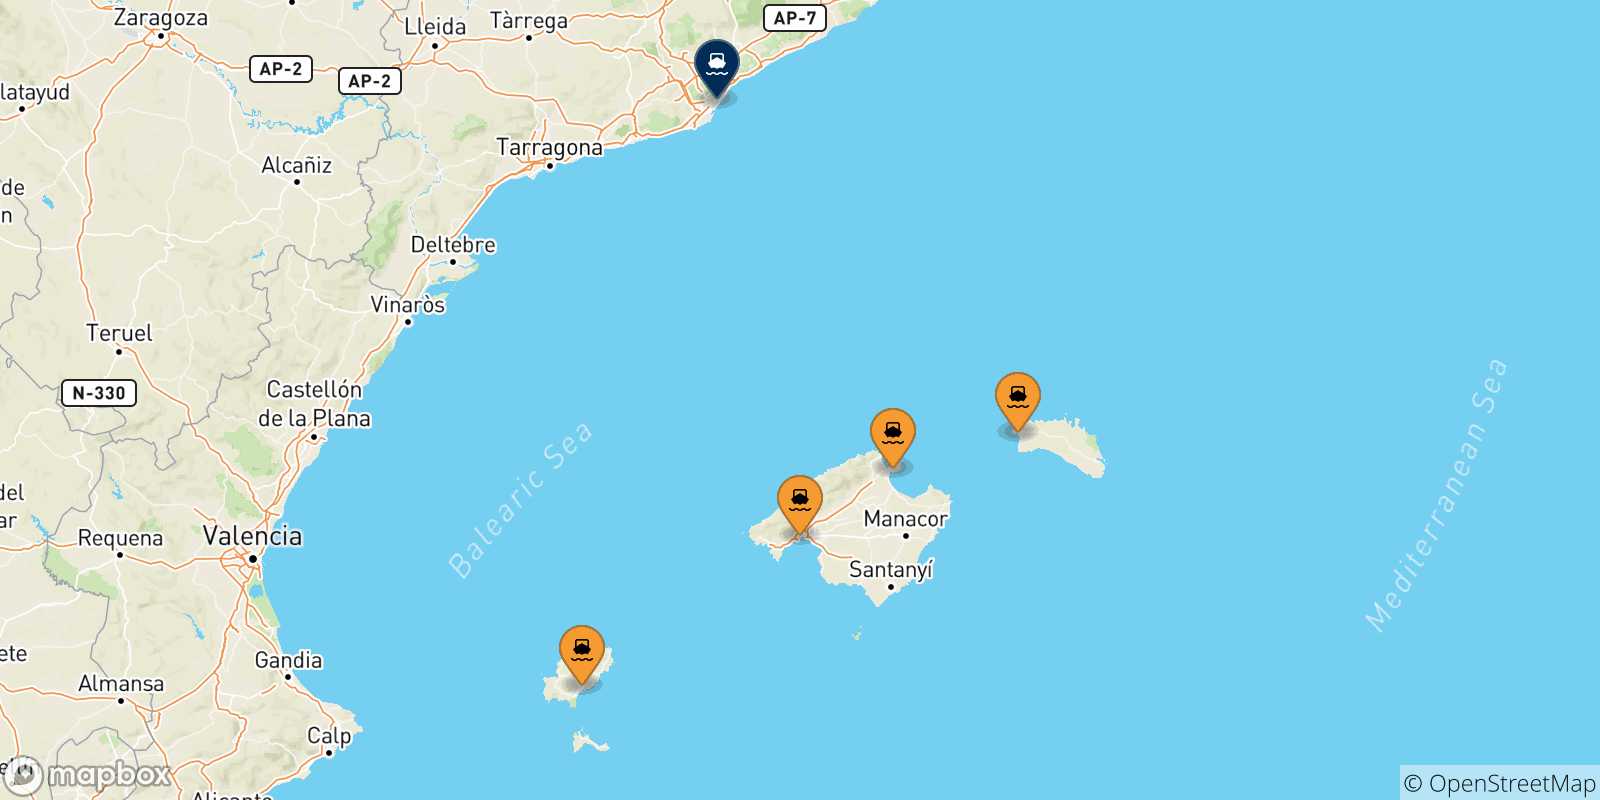 Mappa delle possibili rotte tra le Isole Baleari e Barcellona